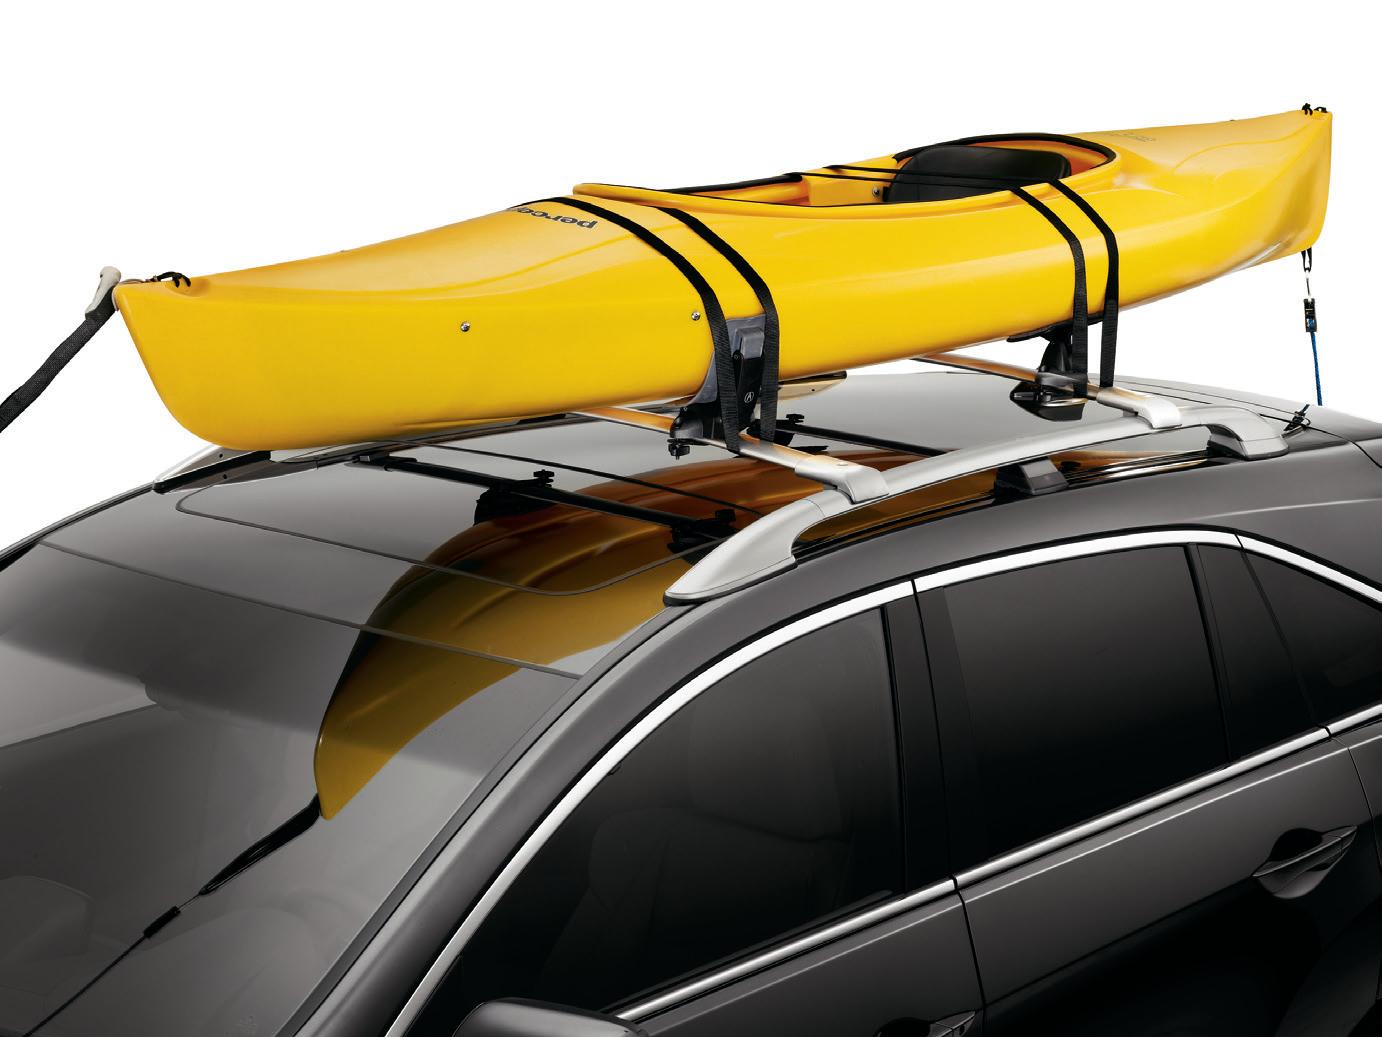 2016 Acura RDX Kayak Attachment 08L09-TA1-200